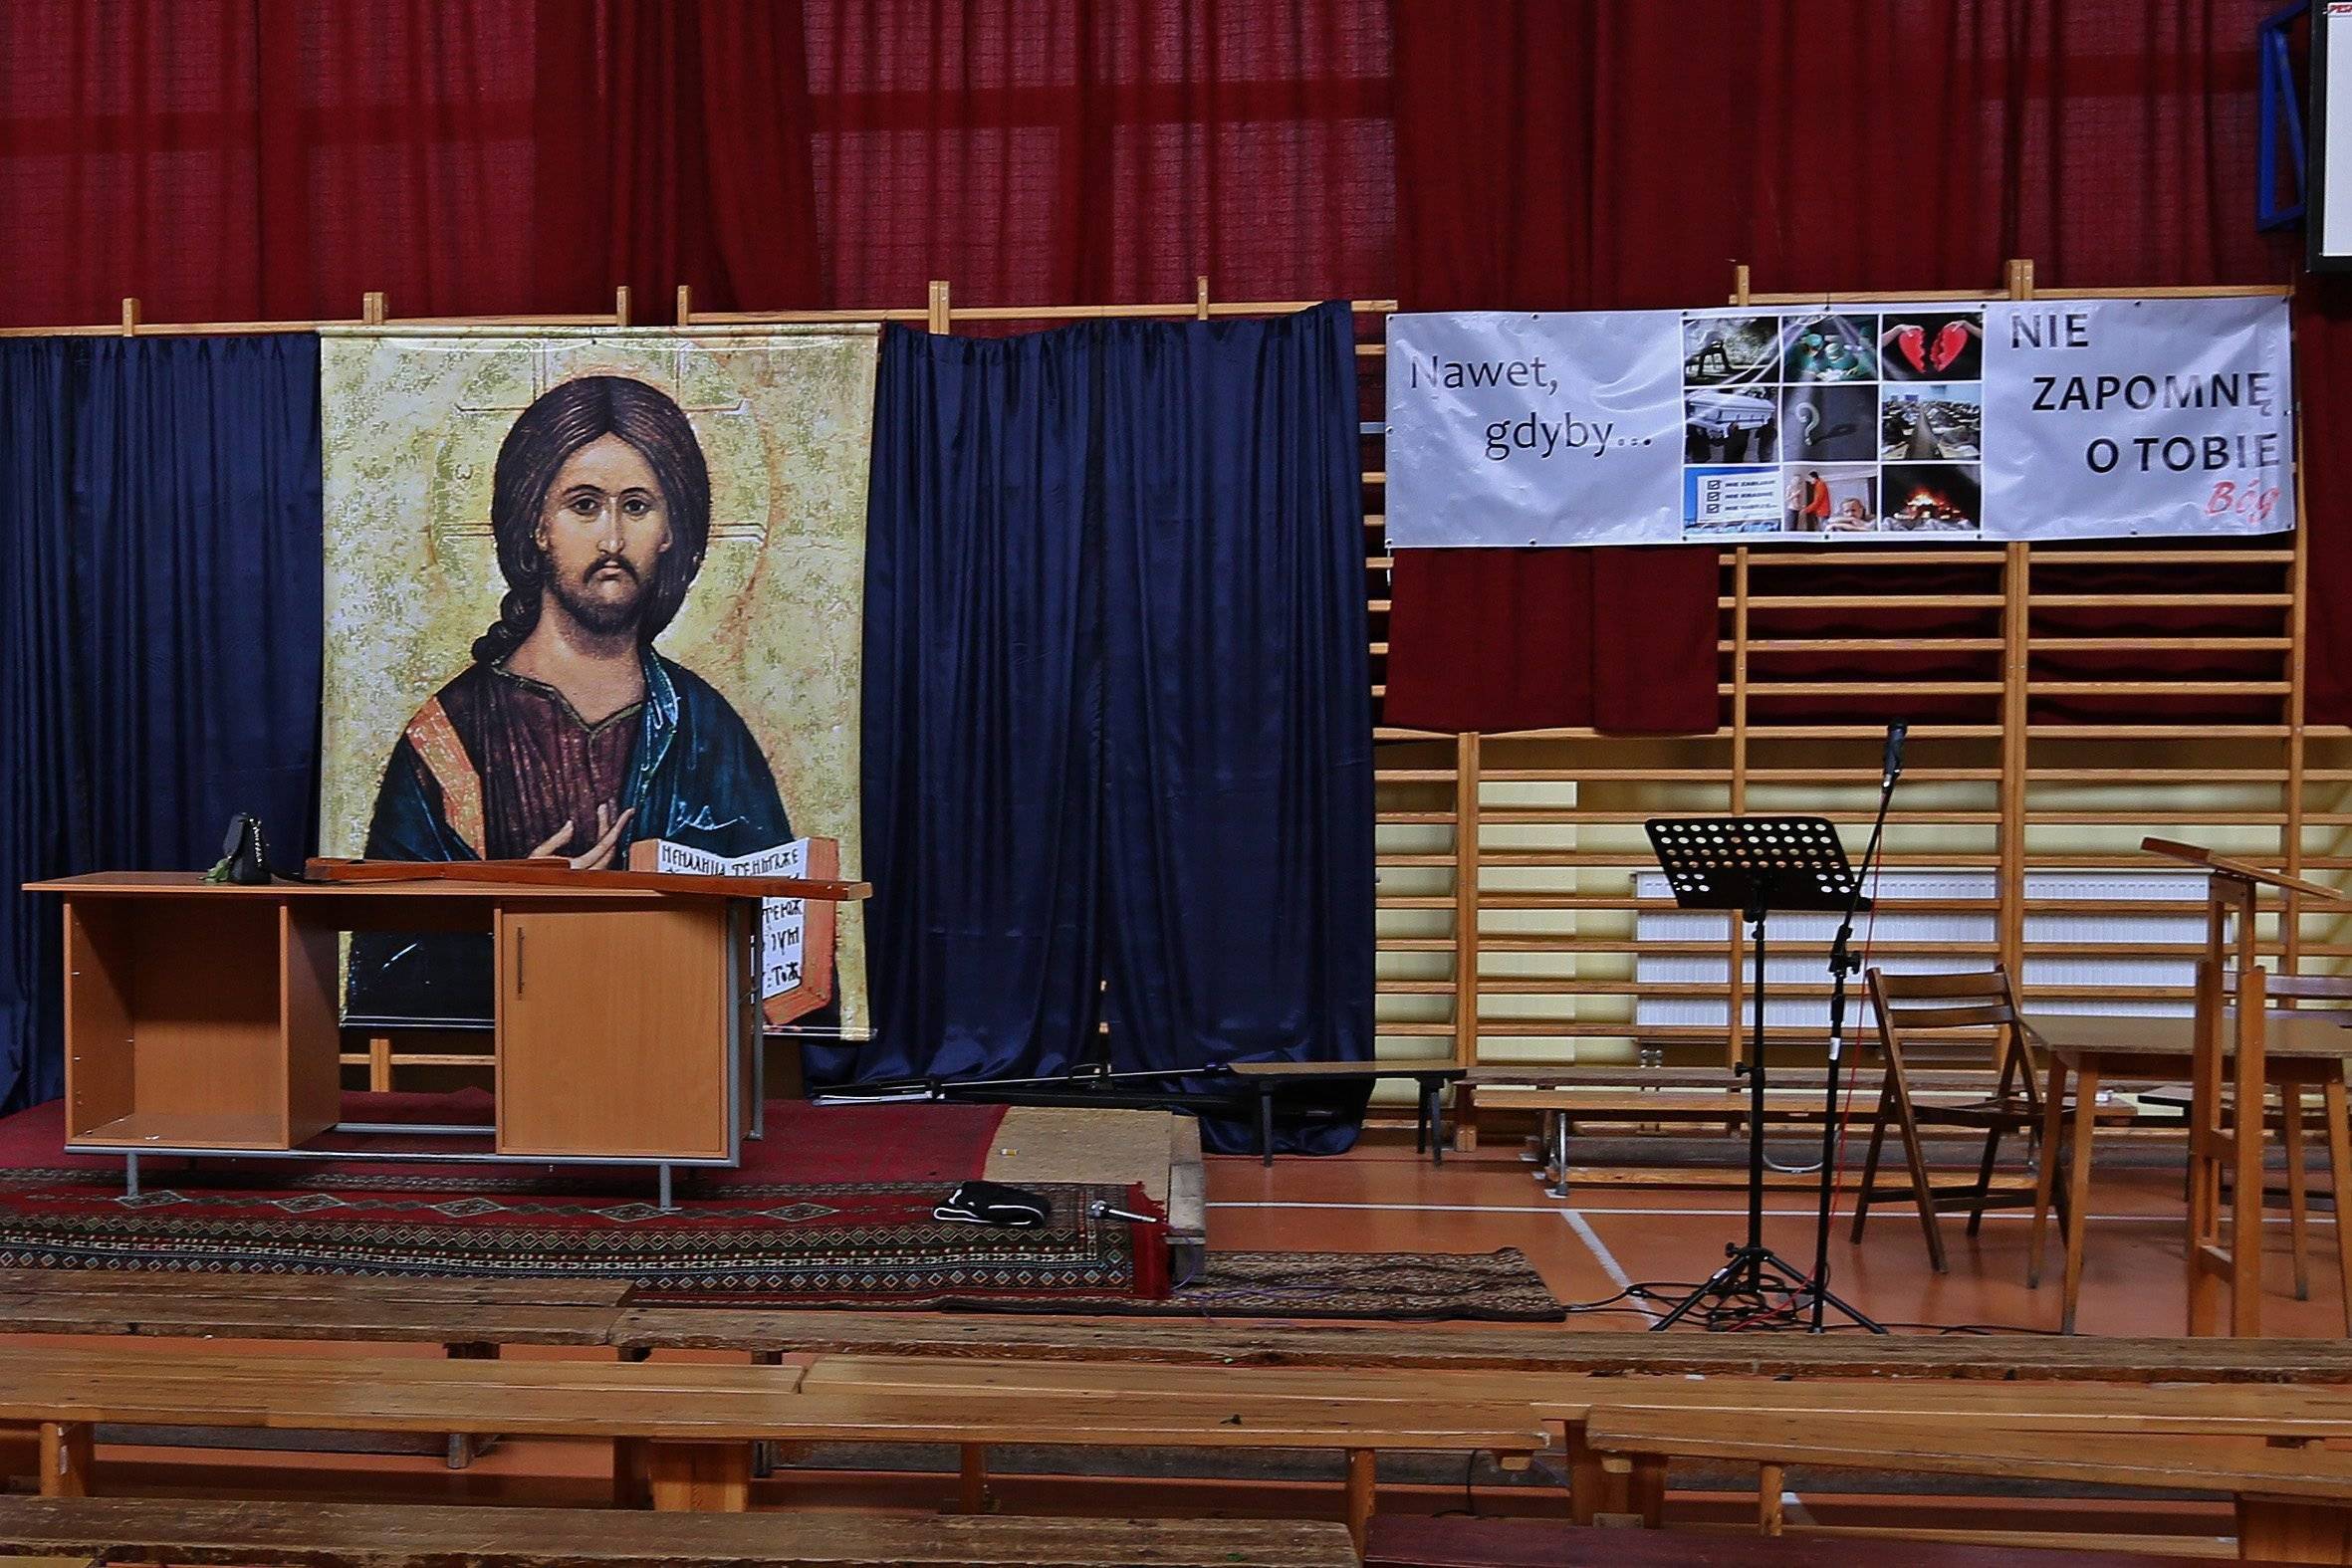 Duży plakat z postacią Jezusa zawieszony na drabinkach w szkolnej sali gimnastycznej